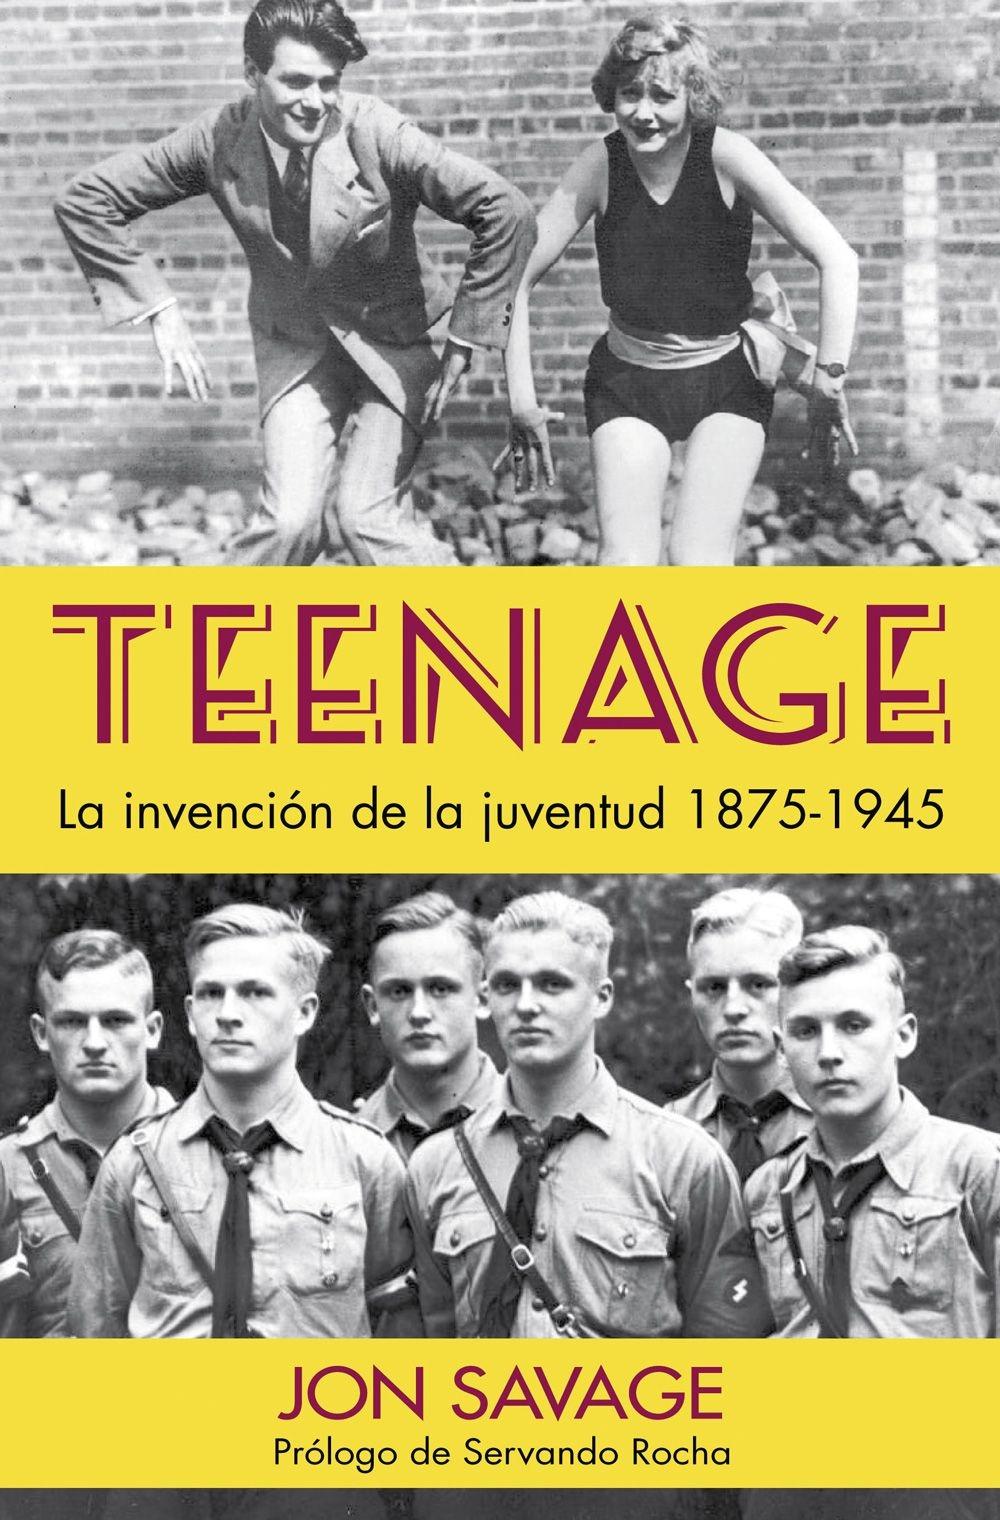 Teenage "La Invención de la Juventud, 1875-1945". 